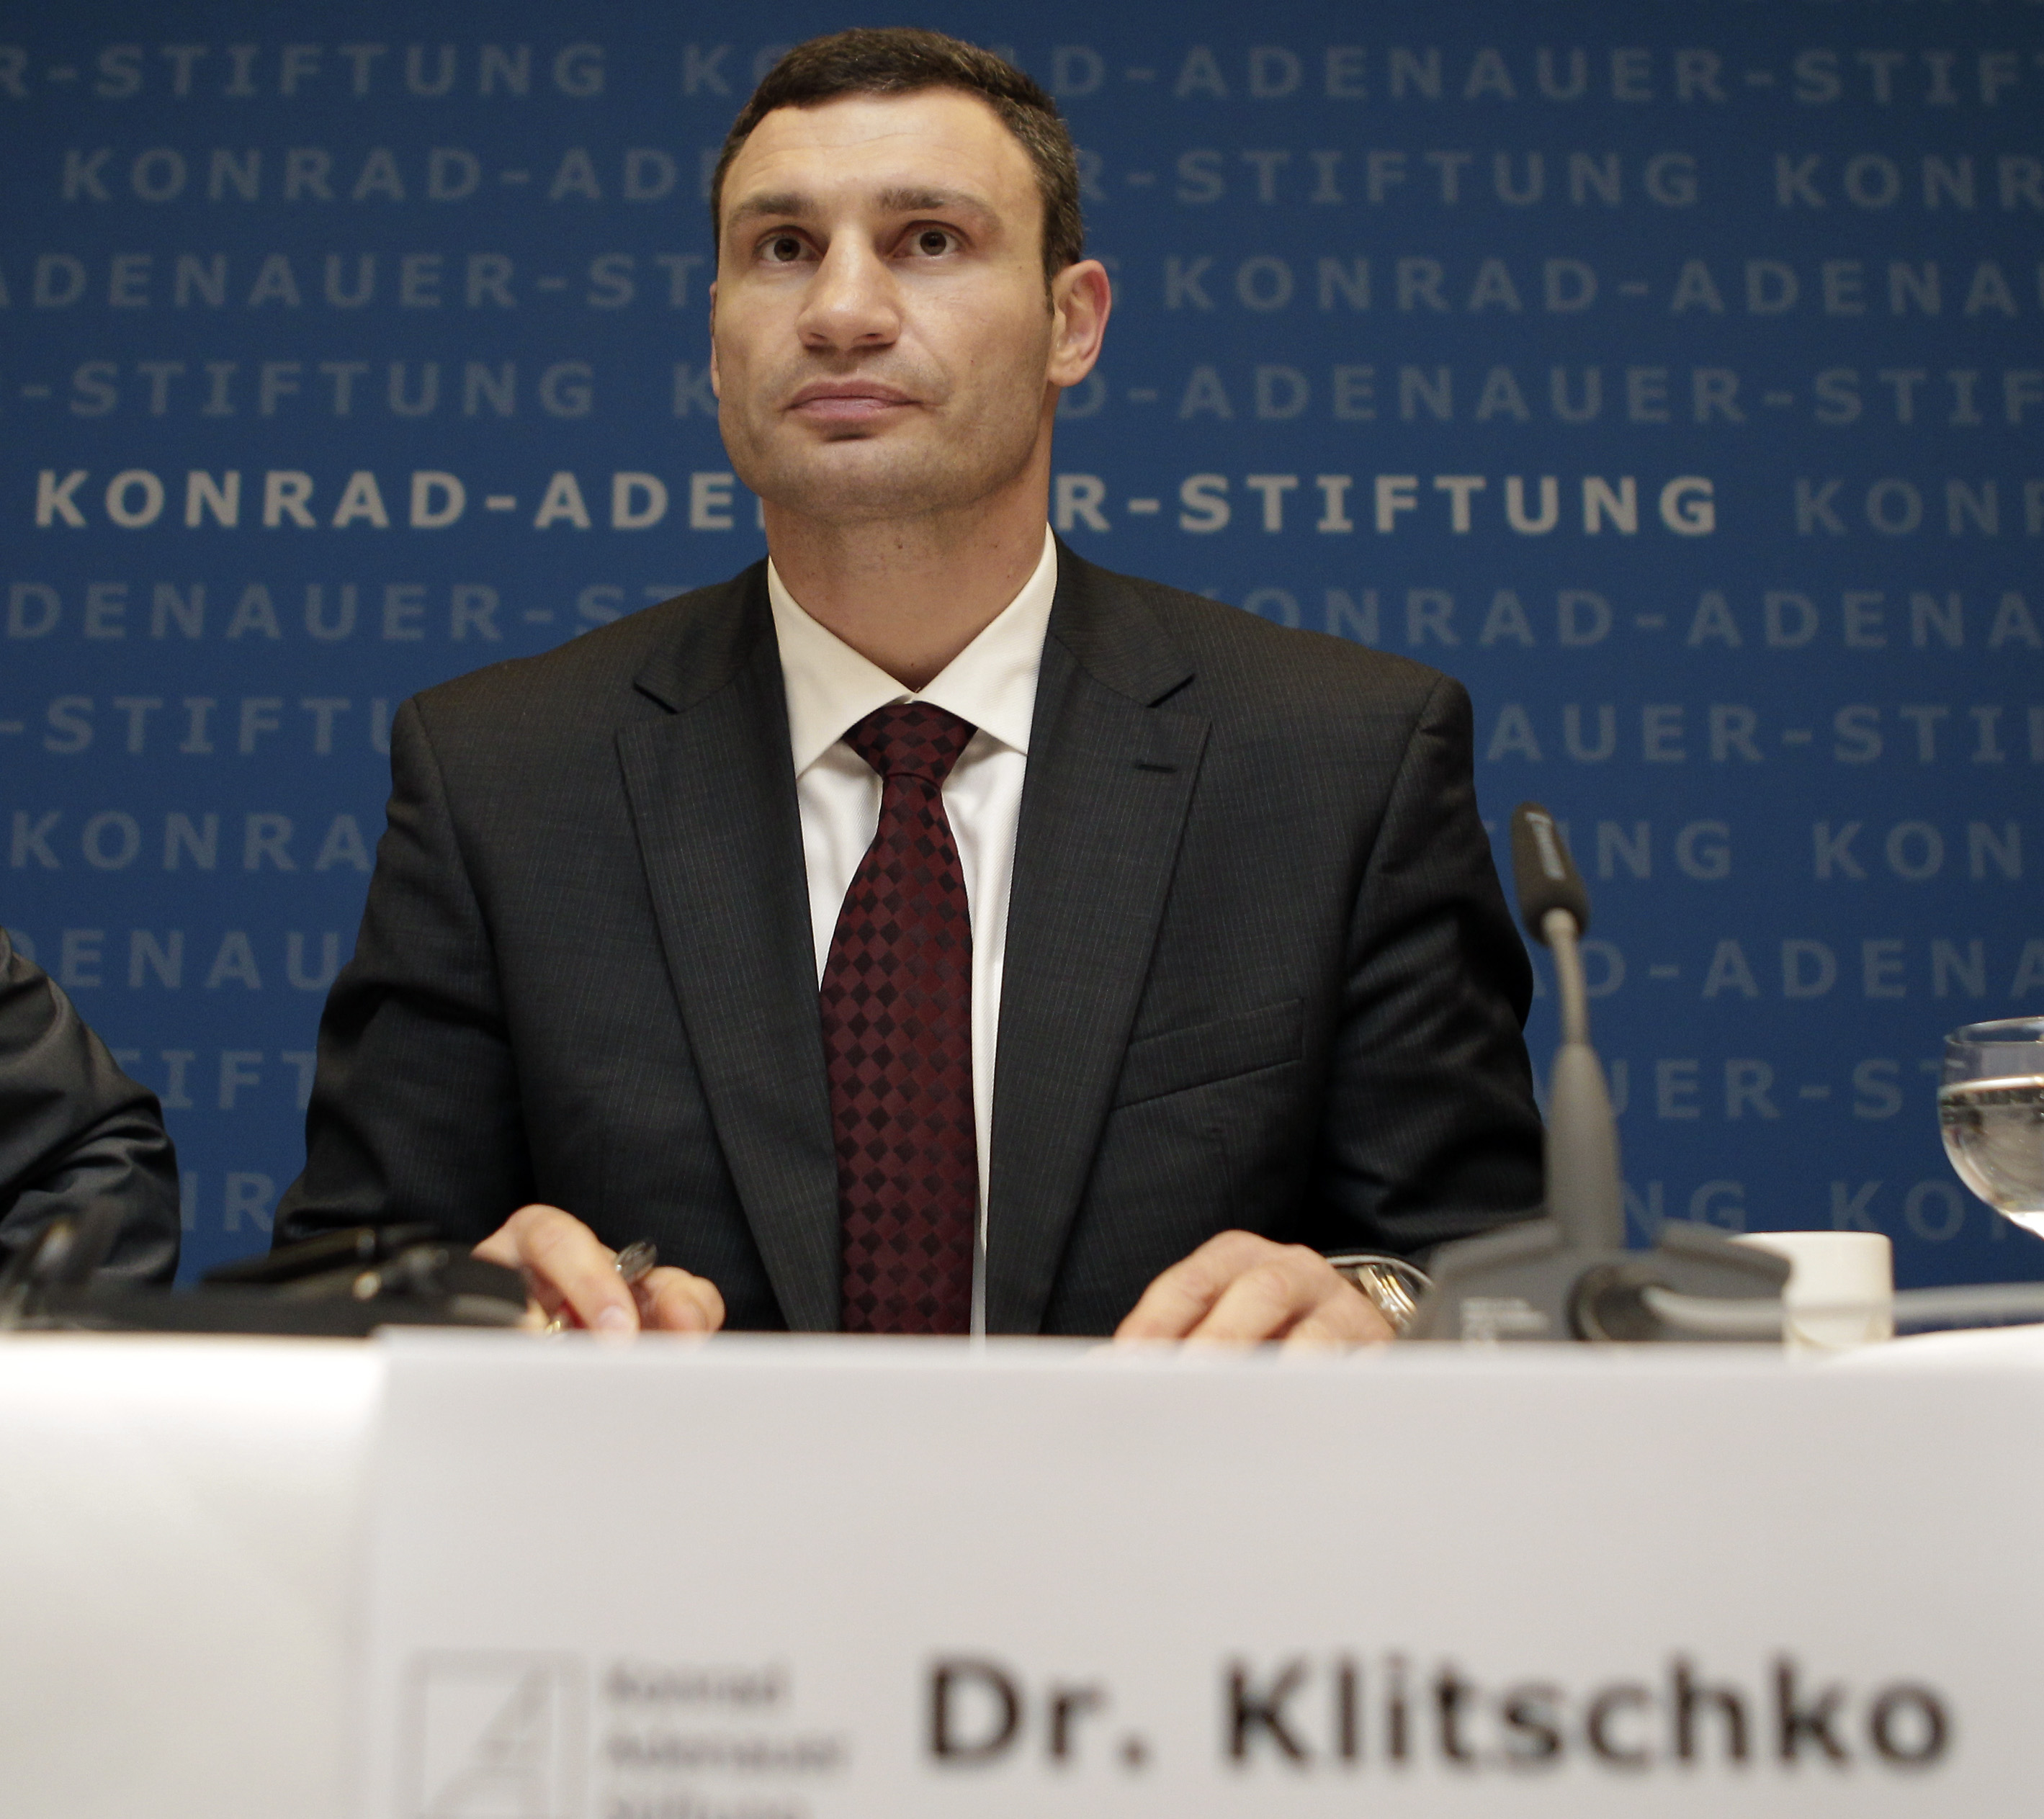 Klitschko är den första WBC-mästaren i boxning som har en doktorsexamen, närmare bestämt i idrottsvetenskap vid Kievs universitet. Den har gett upphov till smeknamnet Dr. Ironfist.